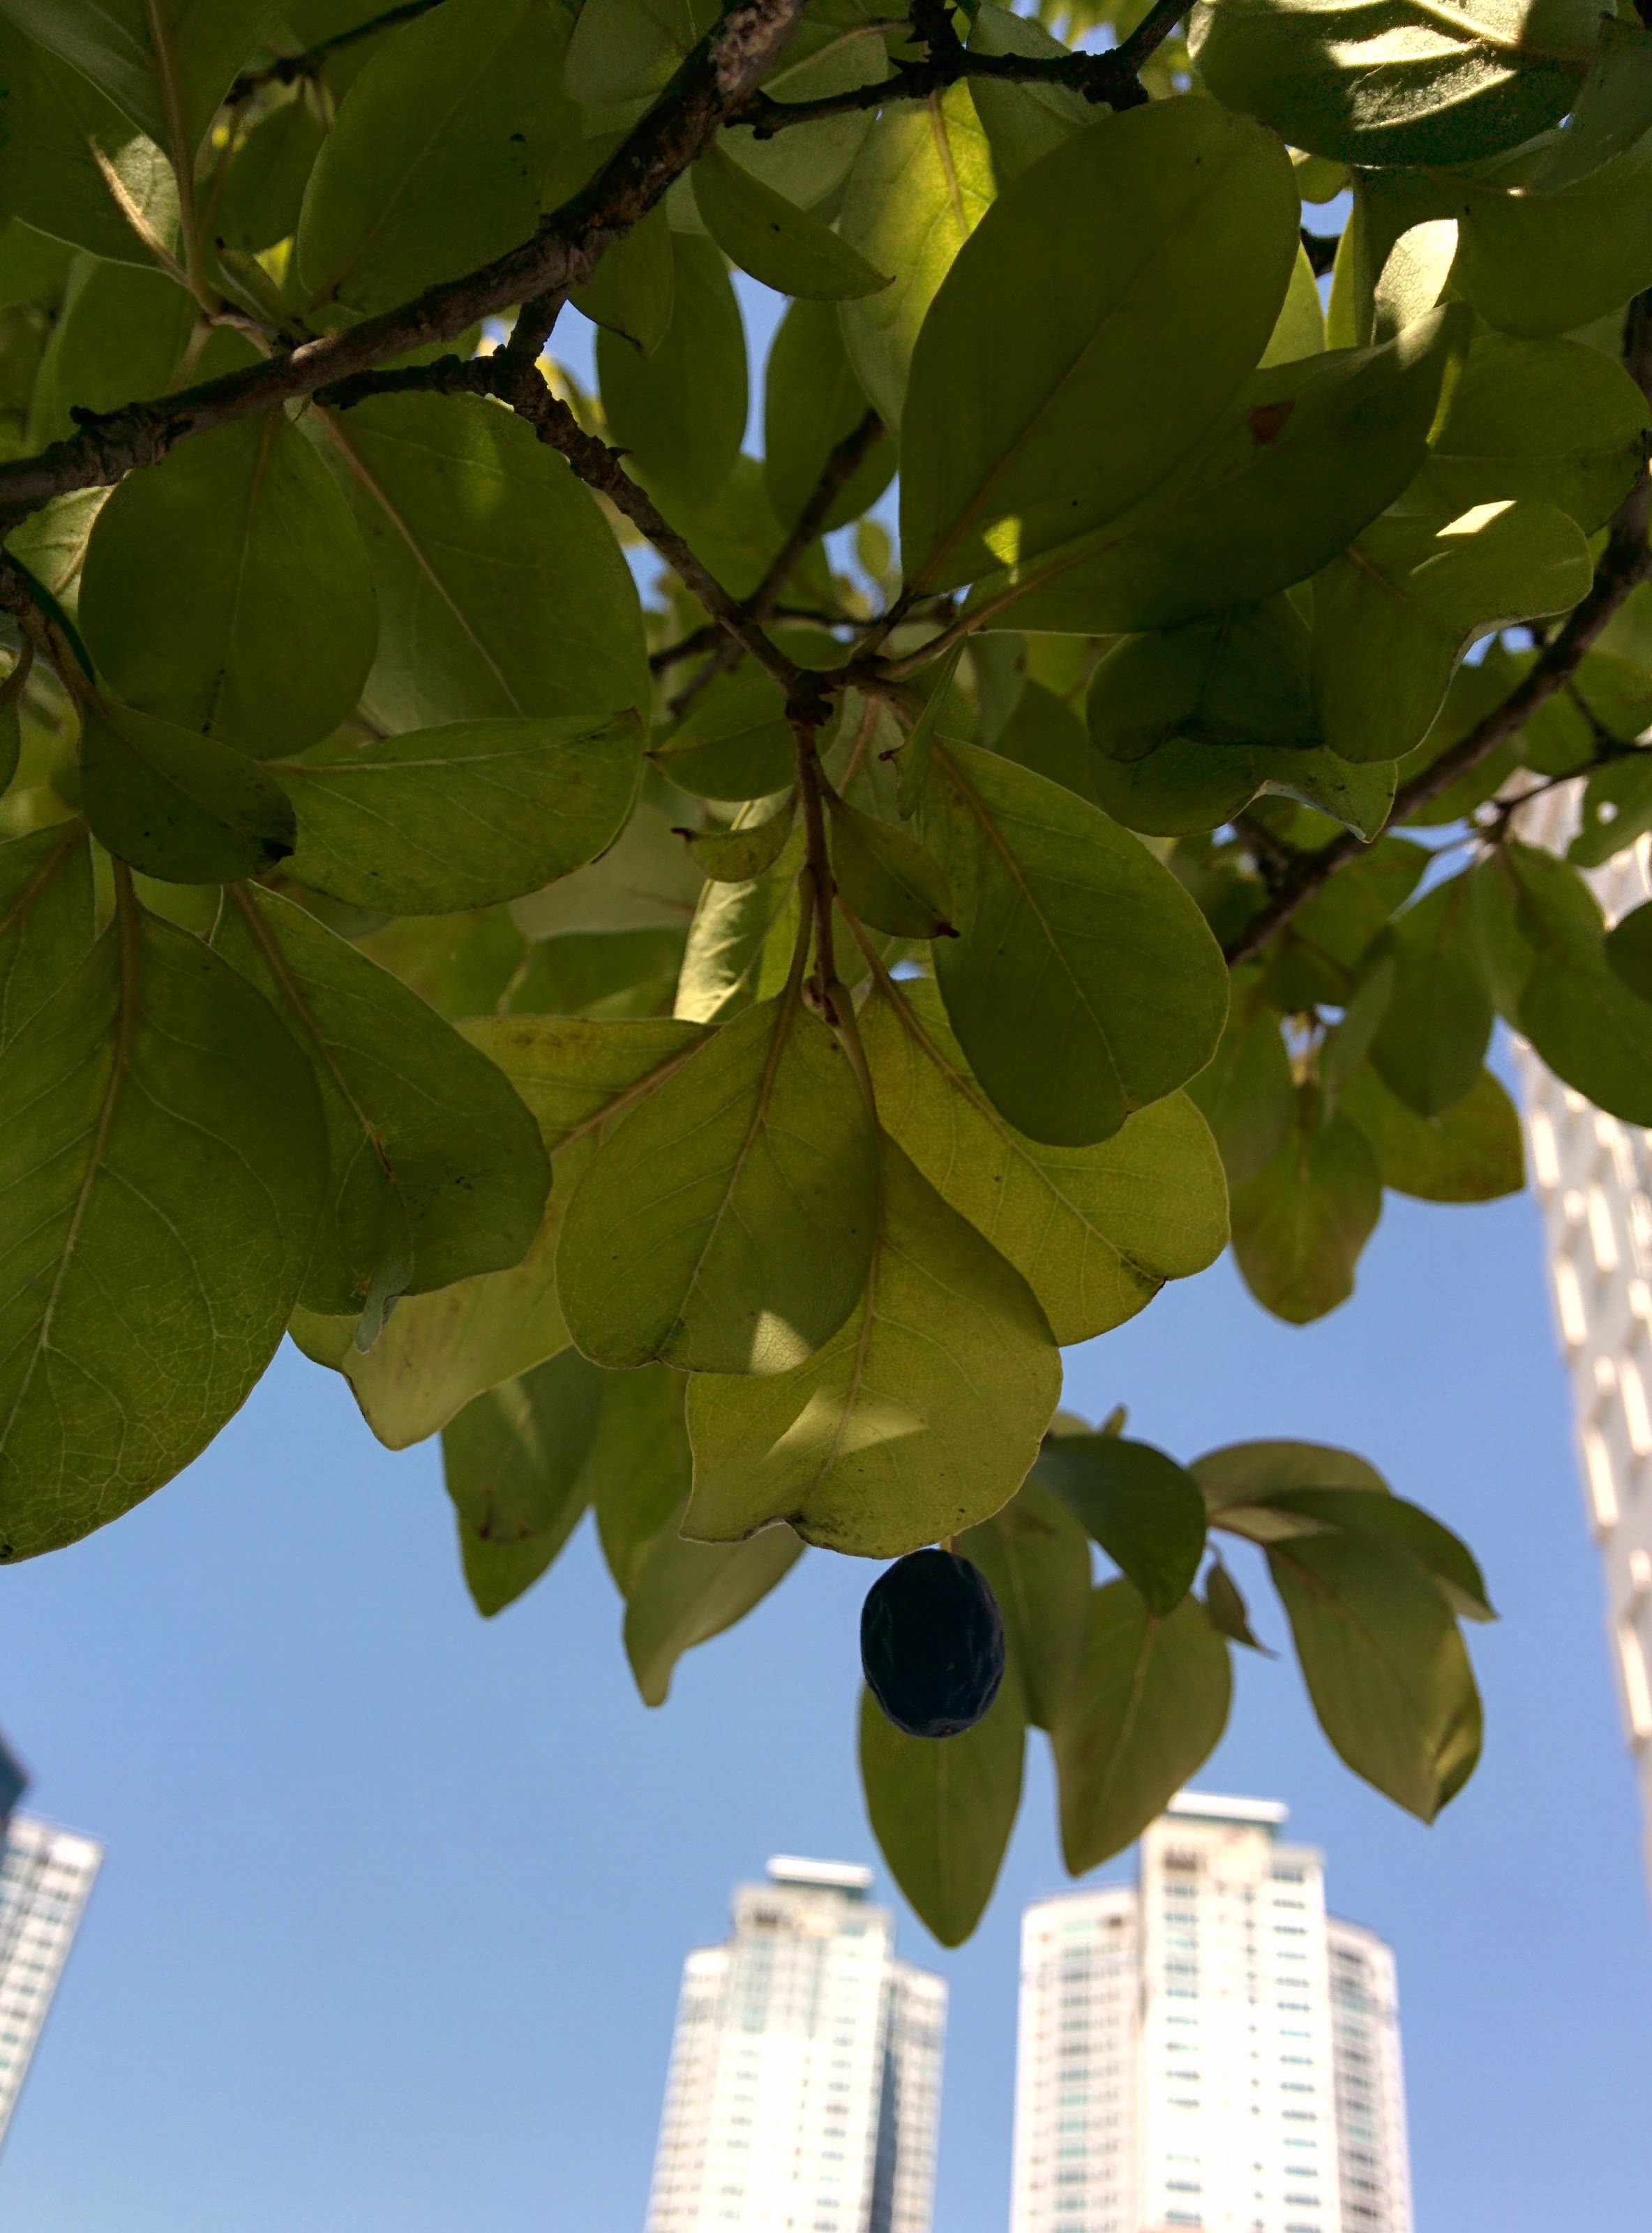 IMG_20151006_124715.jpg 블루베리를 닮은 검은색 열매가 열린 가로수, 이팝나무